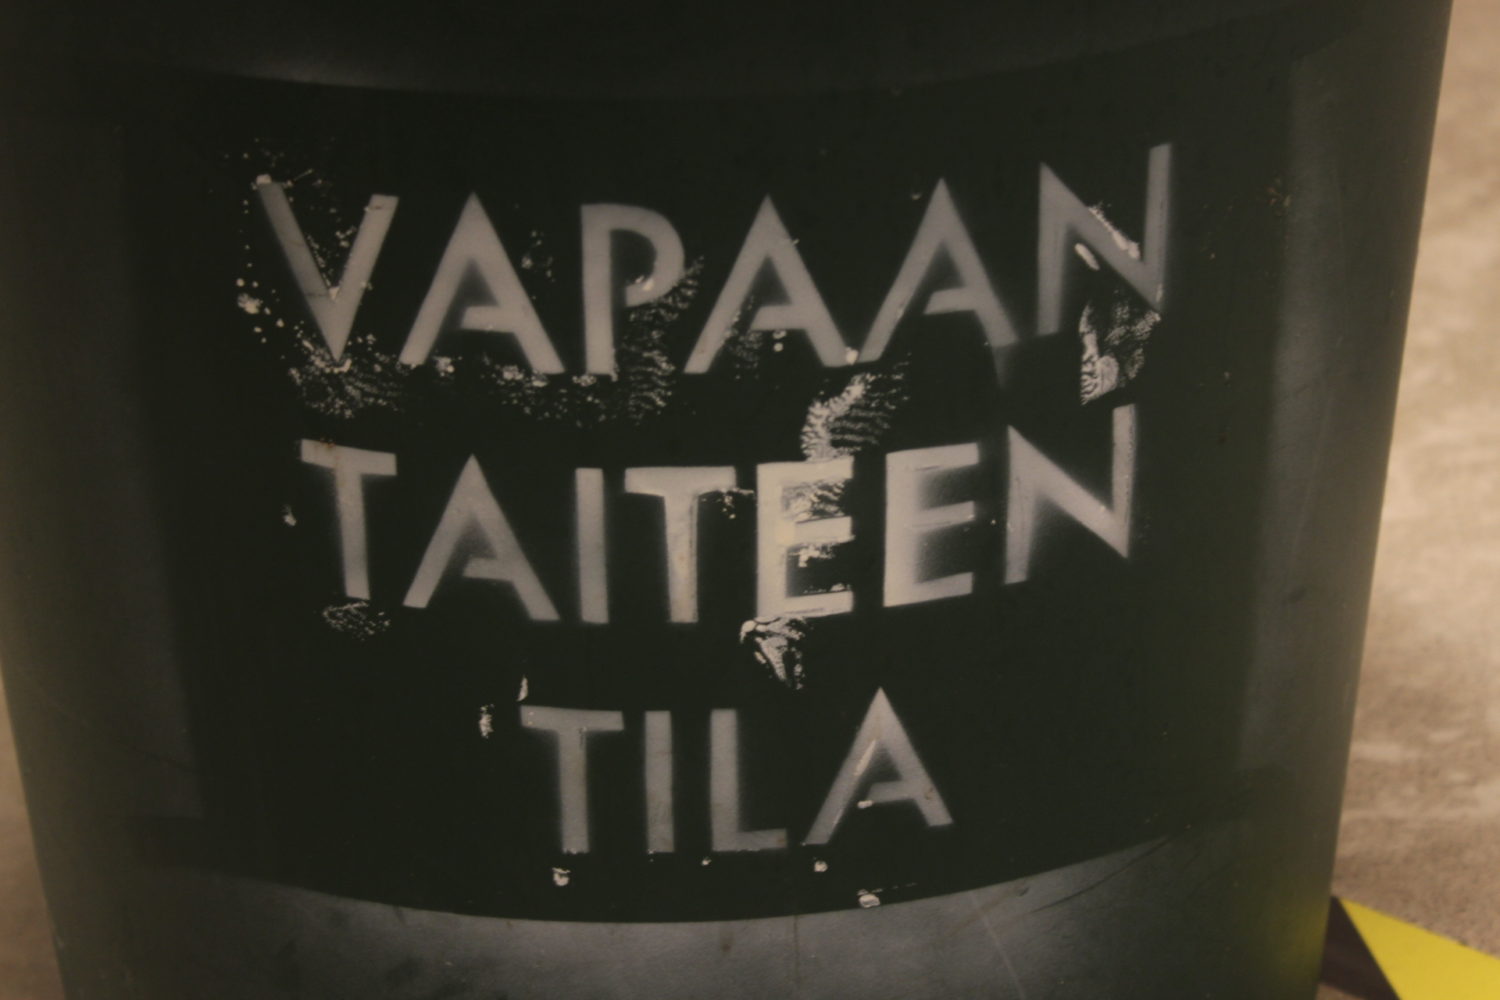 Helsinki: Performance at Vapaan Taiteen Tila — Jen Reimer & Max Stein